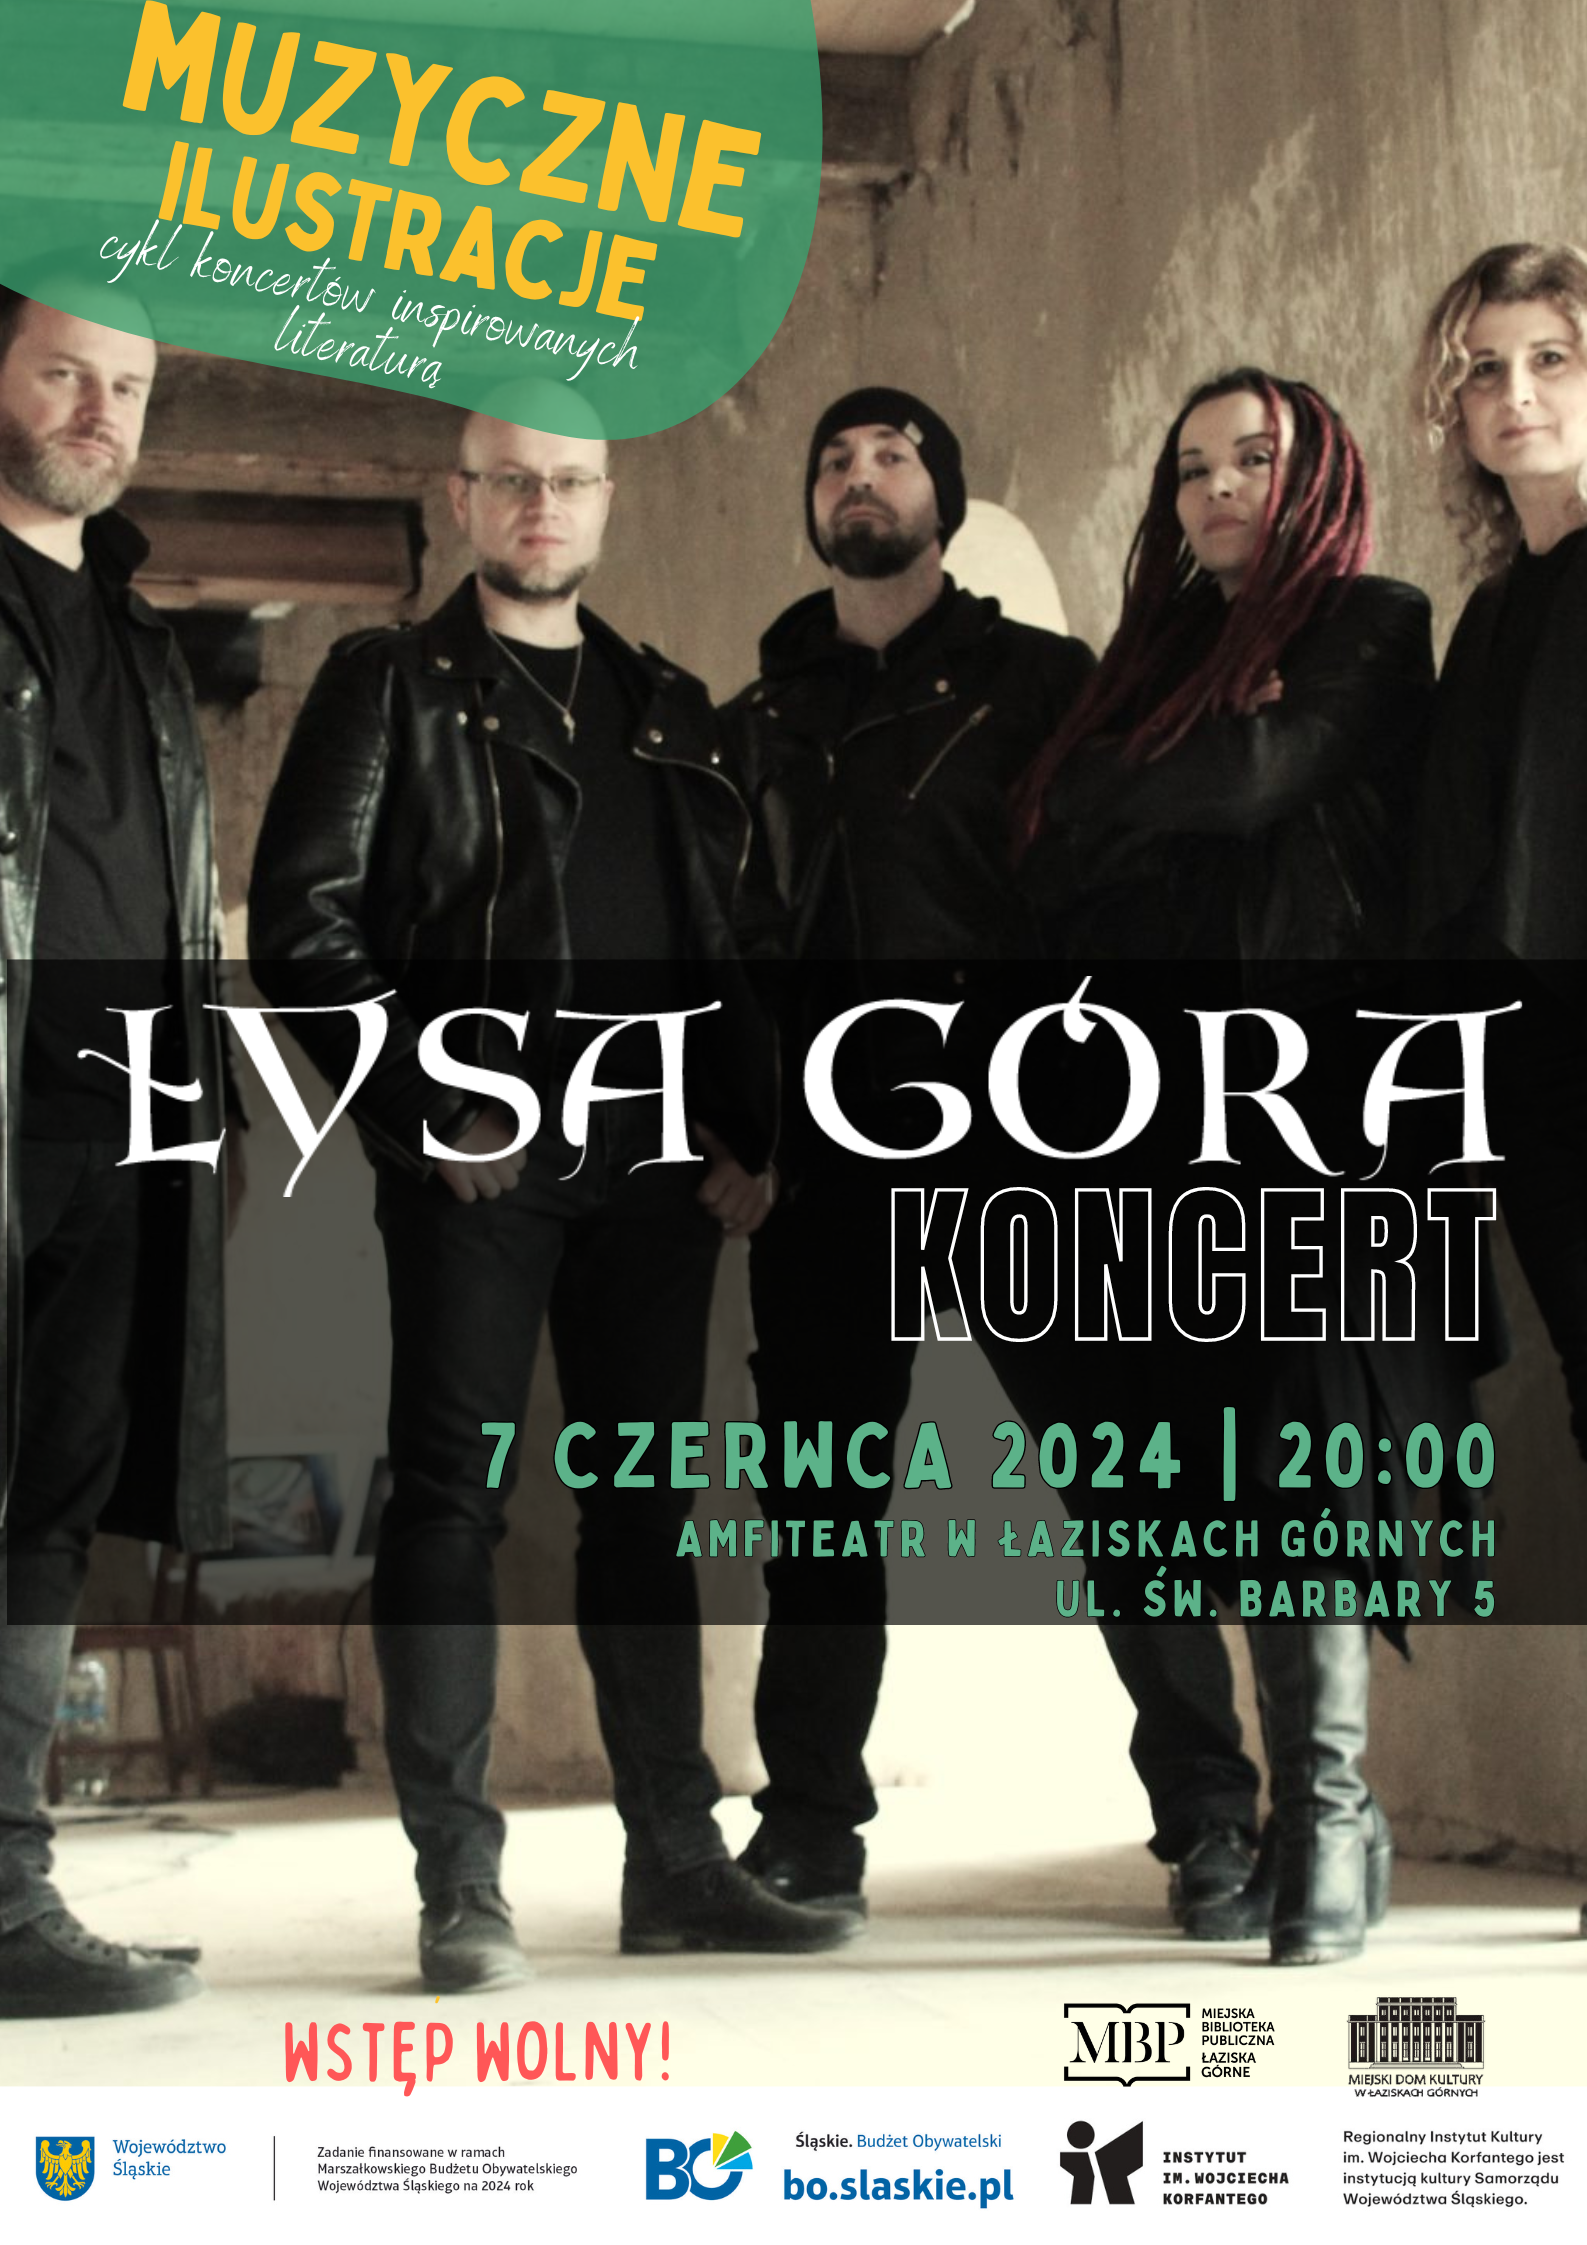 Plakat koncertu zespołu Łysa Góra. W tle zdjęcie zespołu